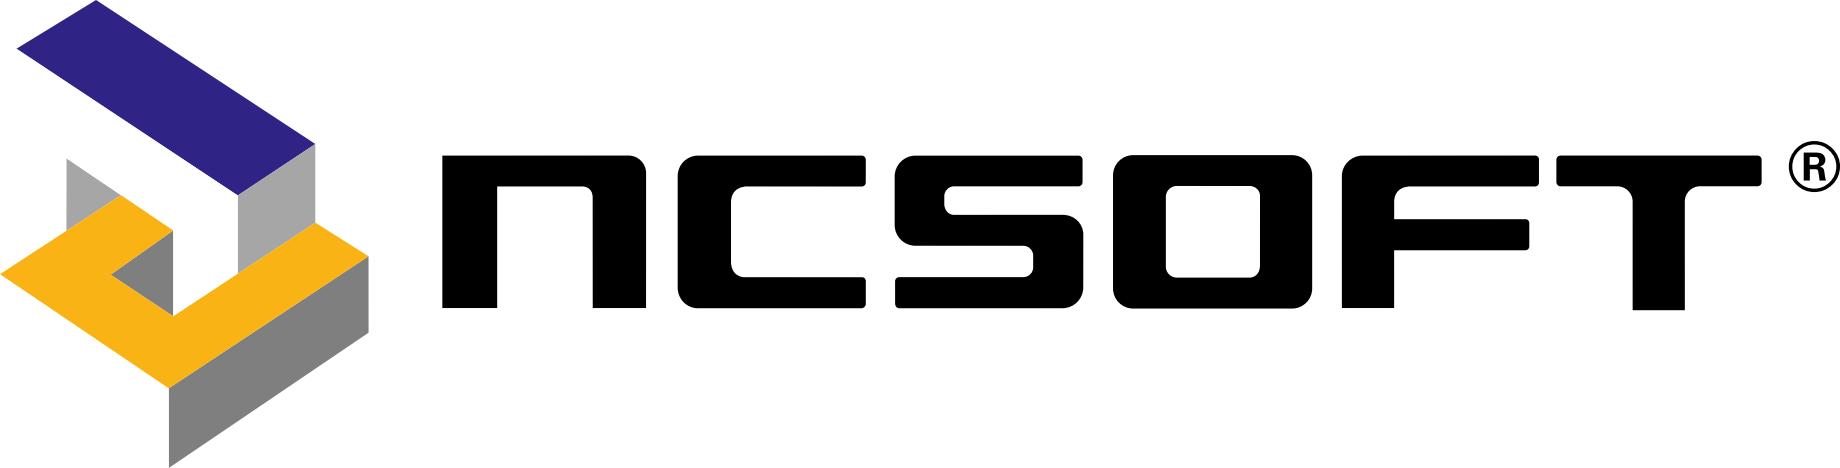 NCsoft Logo [EPS File]